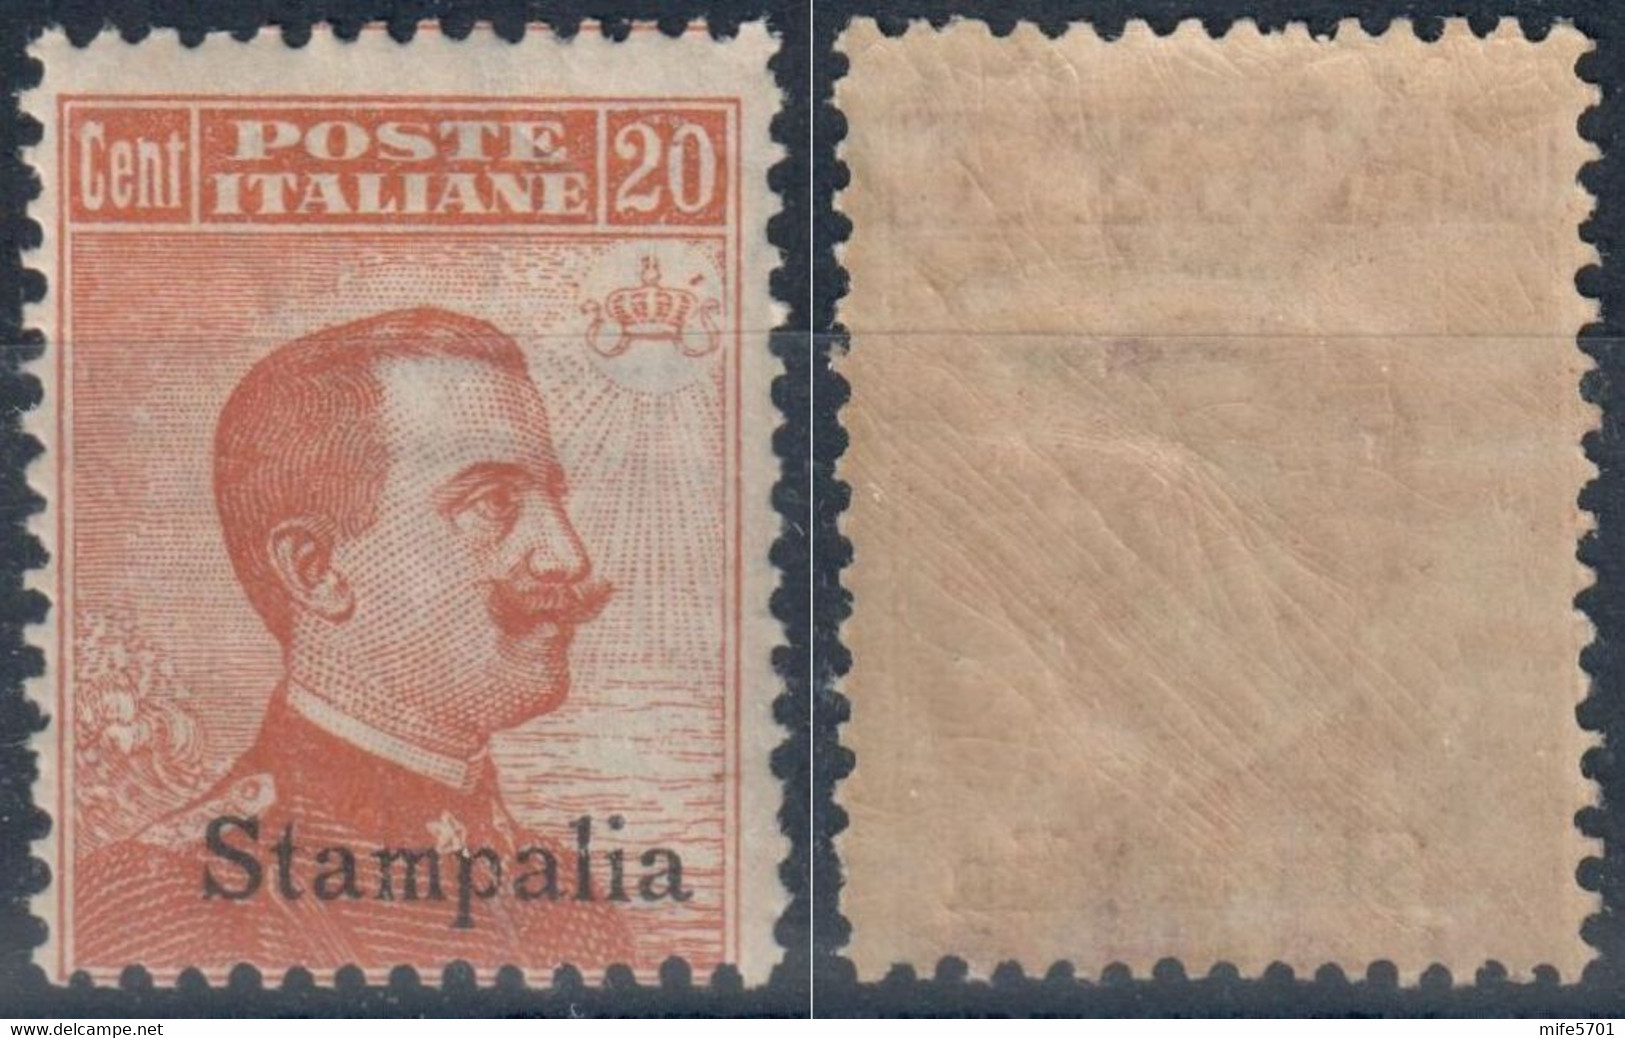 REGNO D'ITALIA / COLONIA STAMPALIA - 1922 - C. 20 ARANCIO - CATALOGO SASSONE NUMERO 11 FRESCHISSIMO - NUOVO / MNH / ** - Aegean (Stampalia)